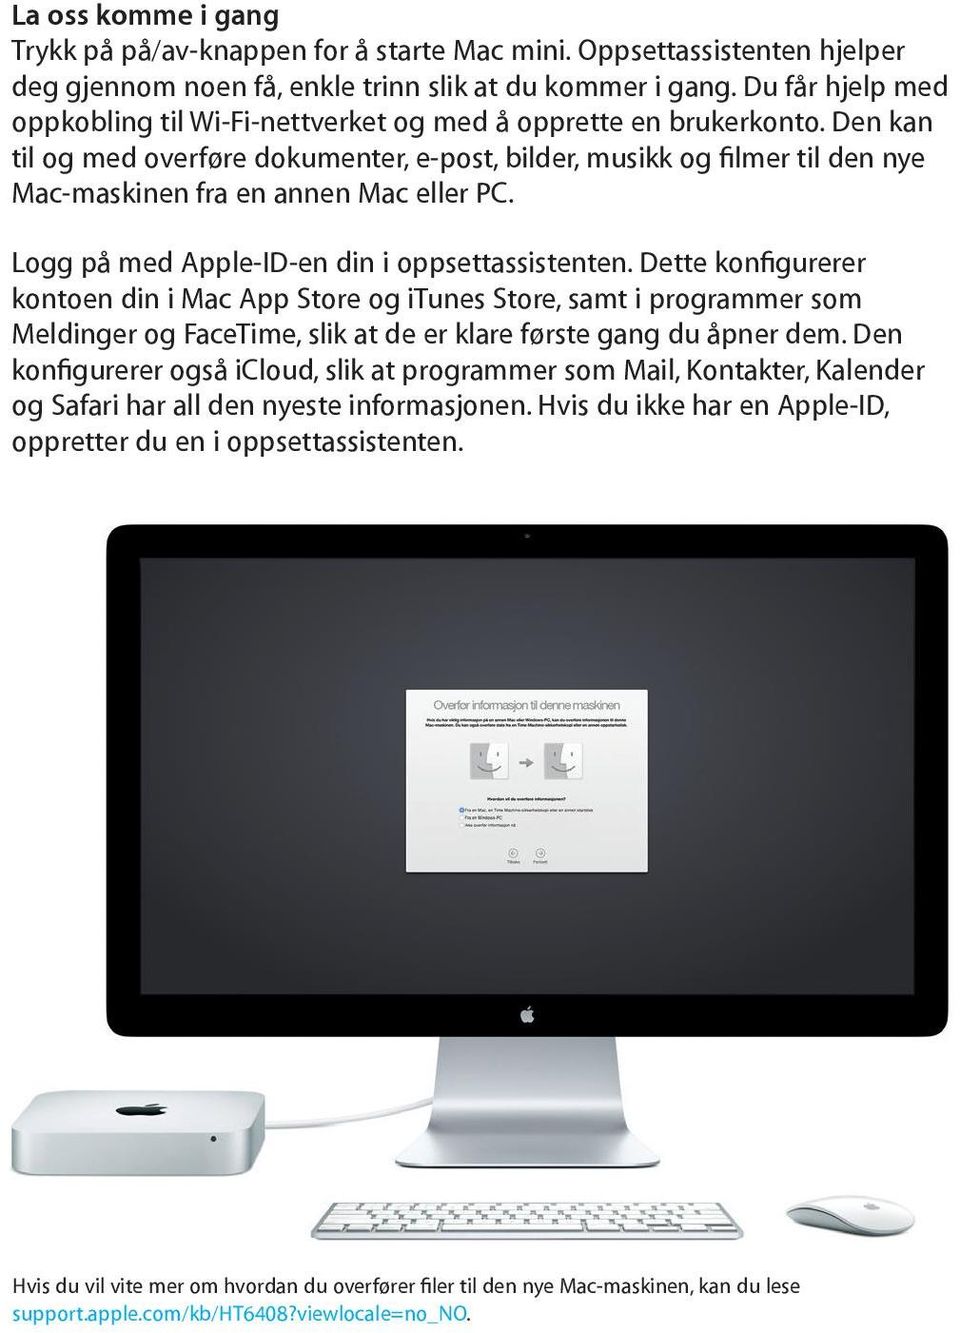 Den kan til og med overføre dokumenter, e-post, bilder, musikk og filmer til den nye Mac-maskinen fra en annen Mac eller PC. Logg på med Apple-ID-en din i oppsettassistenten.